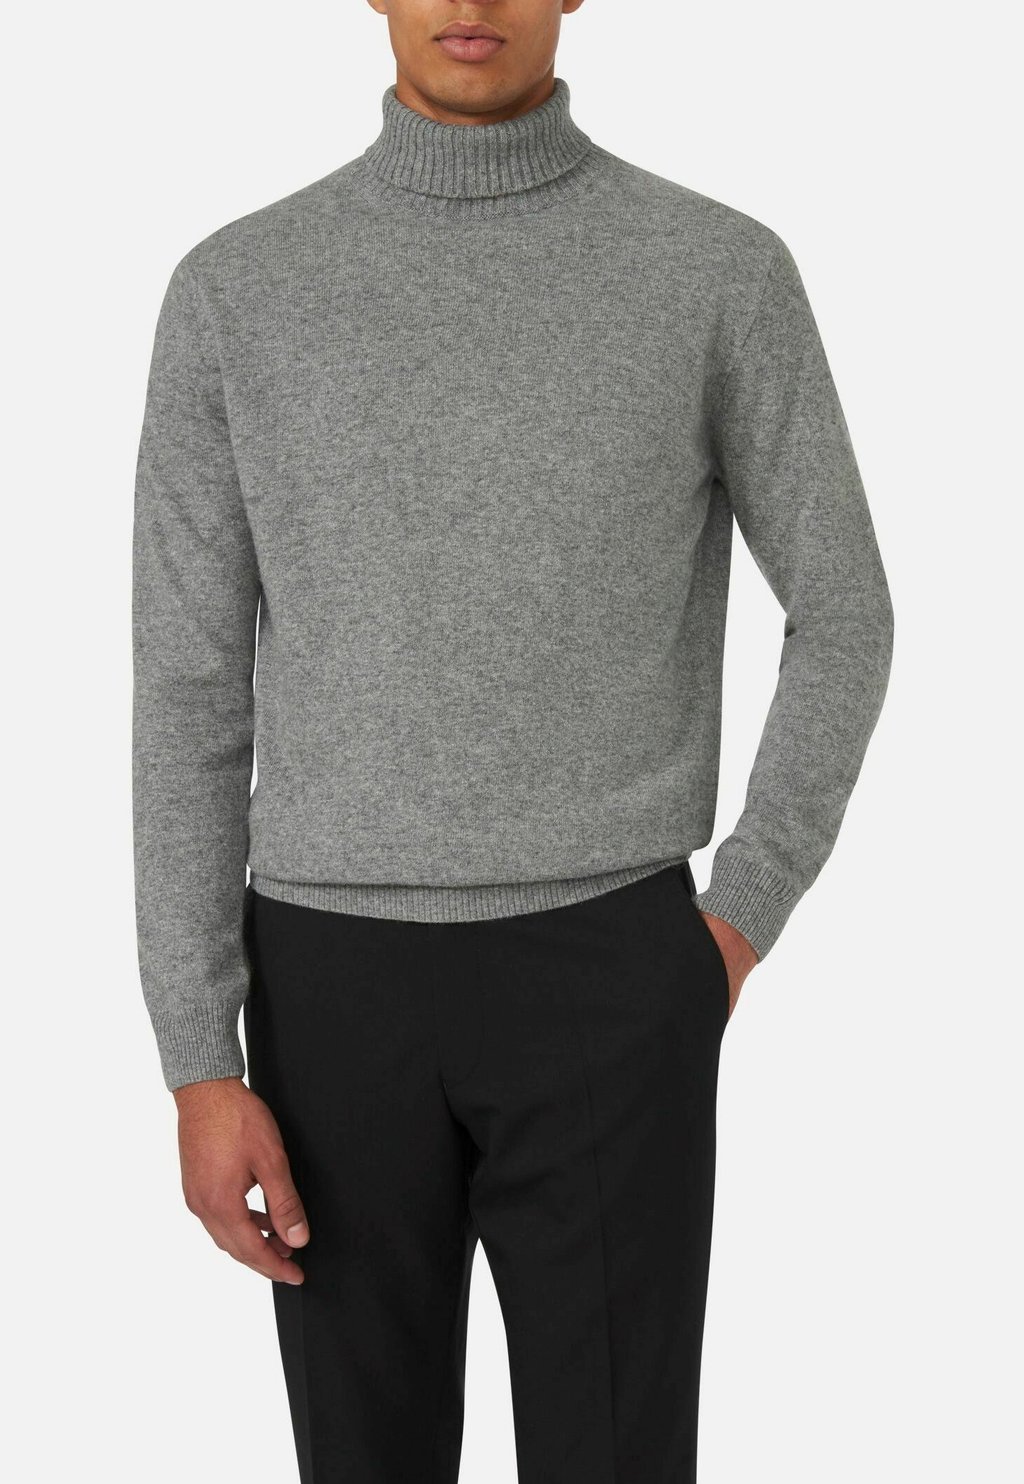 вязаный свитер patton oscar jacobson цвет dark grey Вязаный свитер SALIM ROLLNECK Oscar Jacobson, цвет grey melange